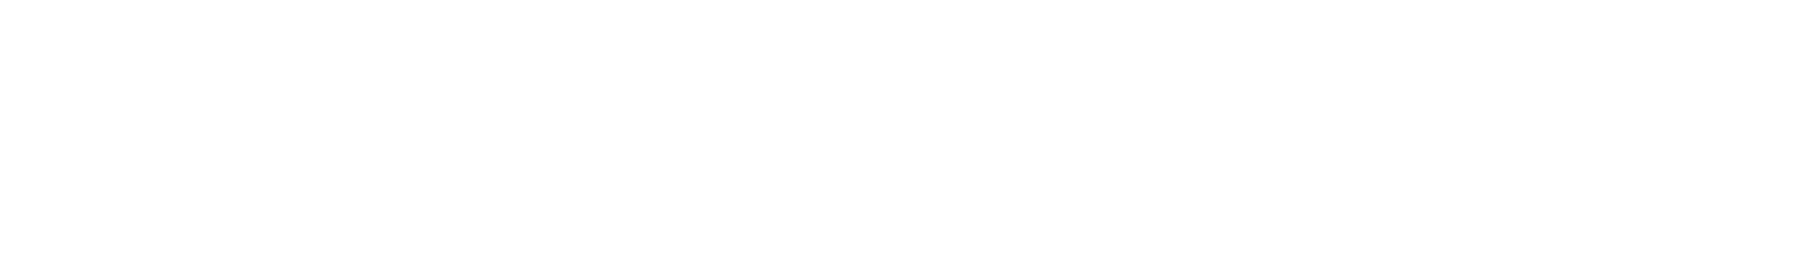 2024.8.17【SAT】 【関東エリア大会A】イオンモール水戸内原▶